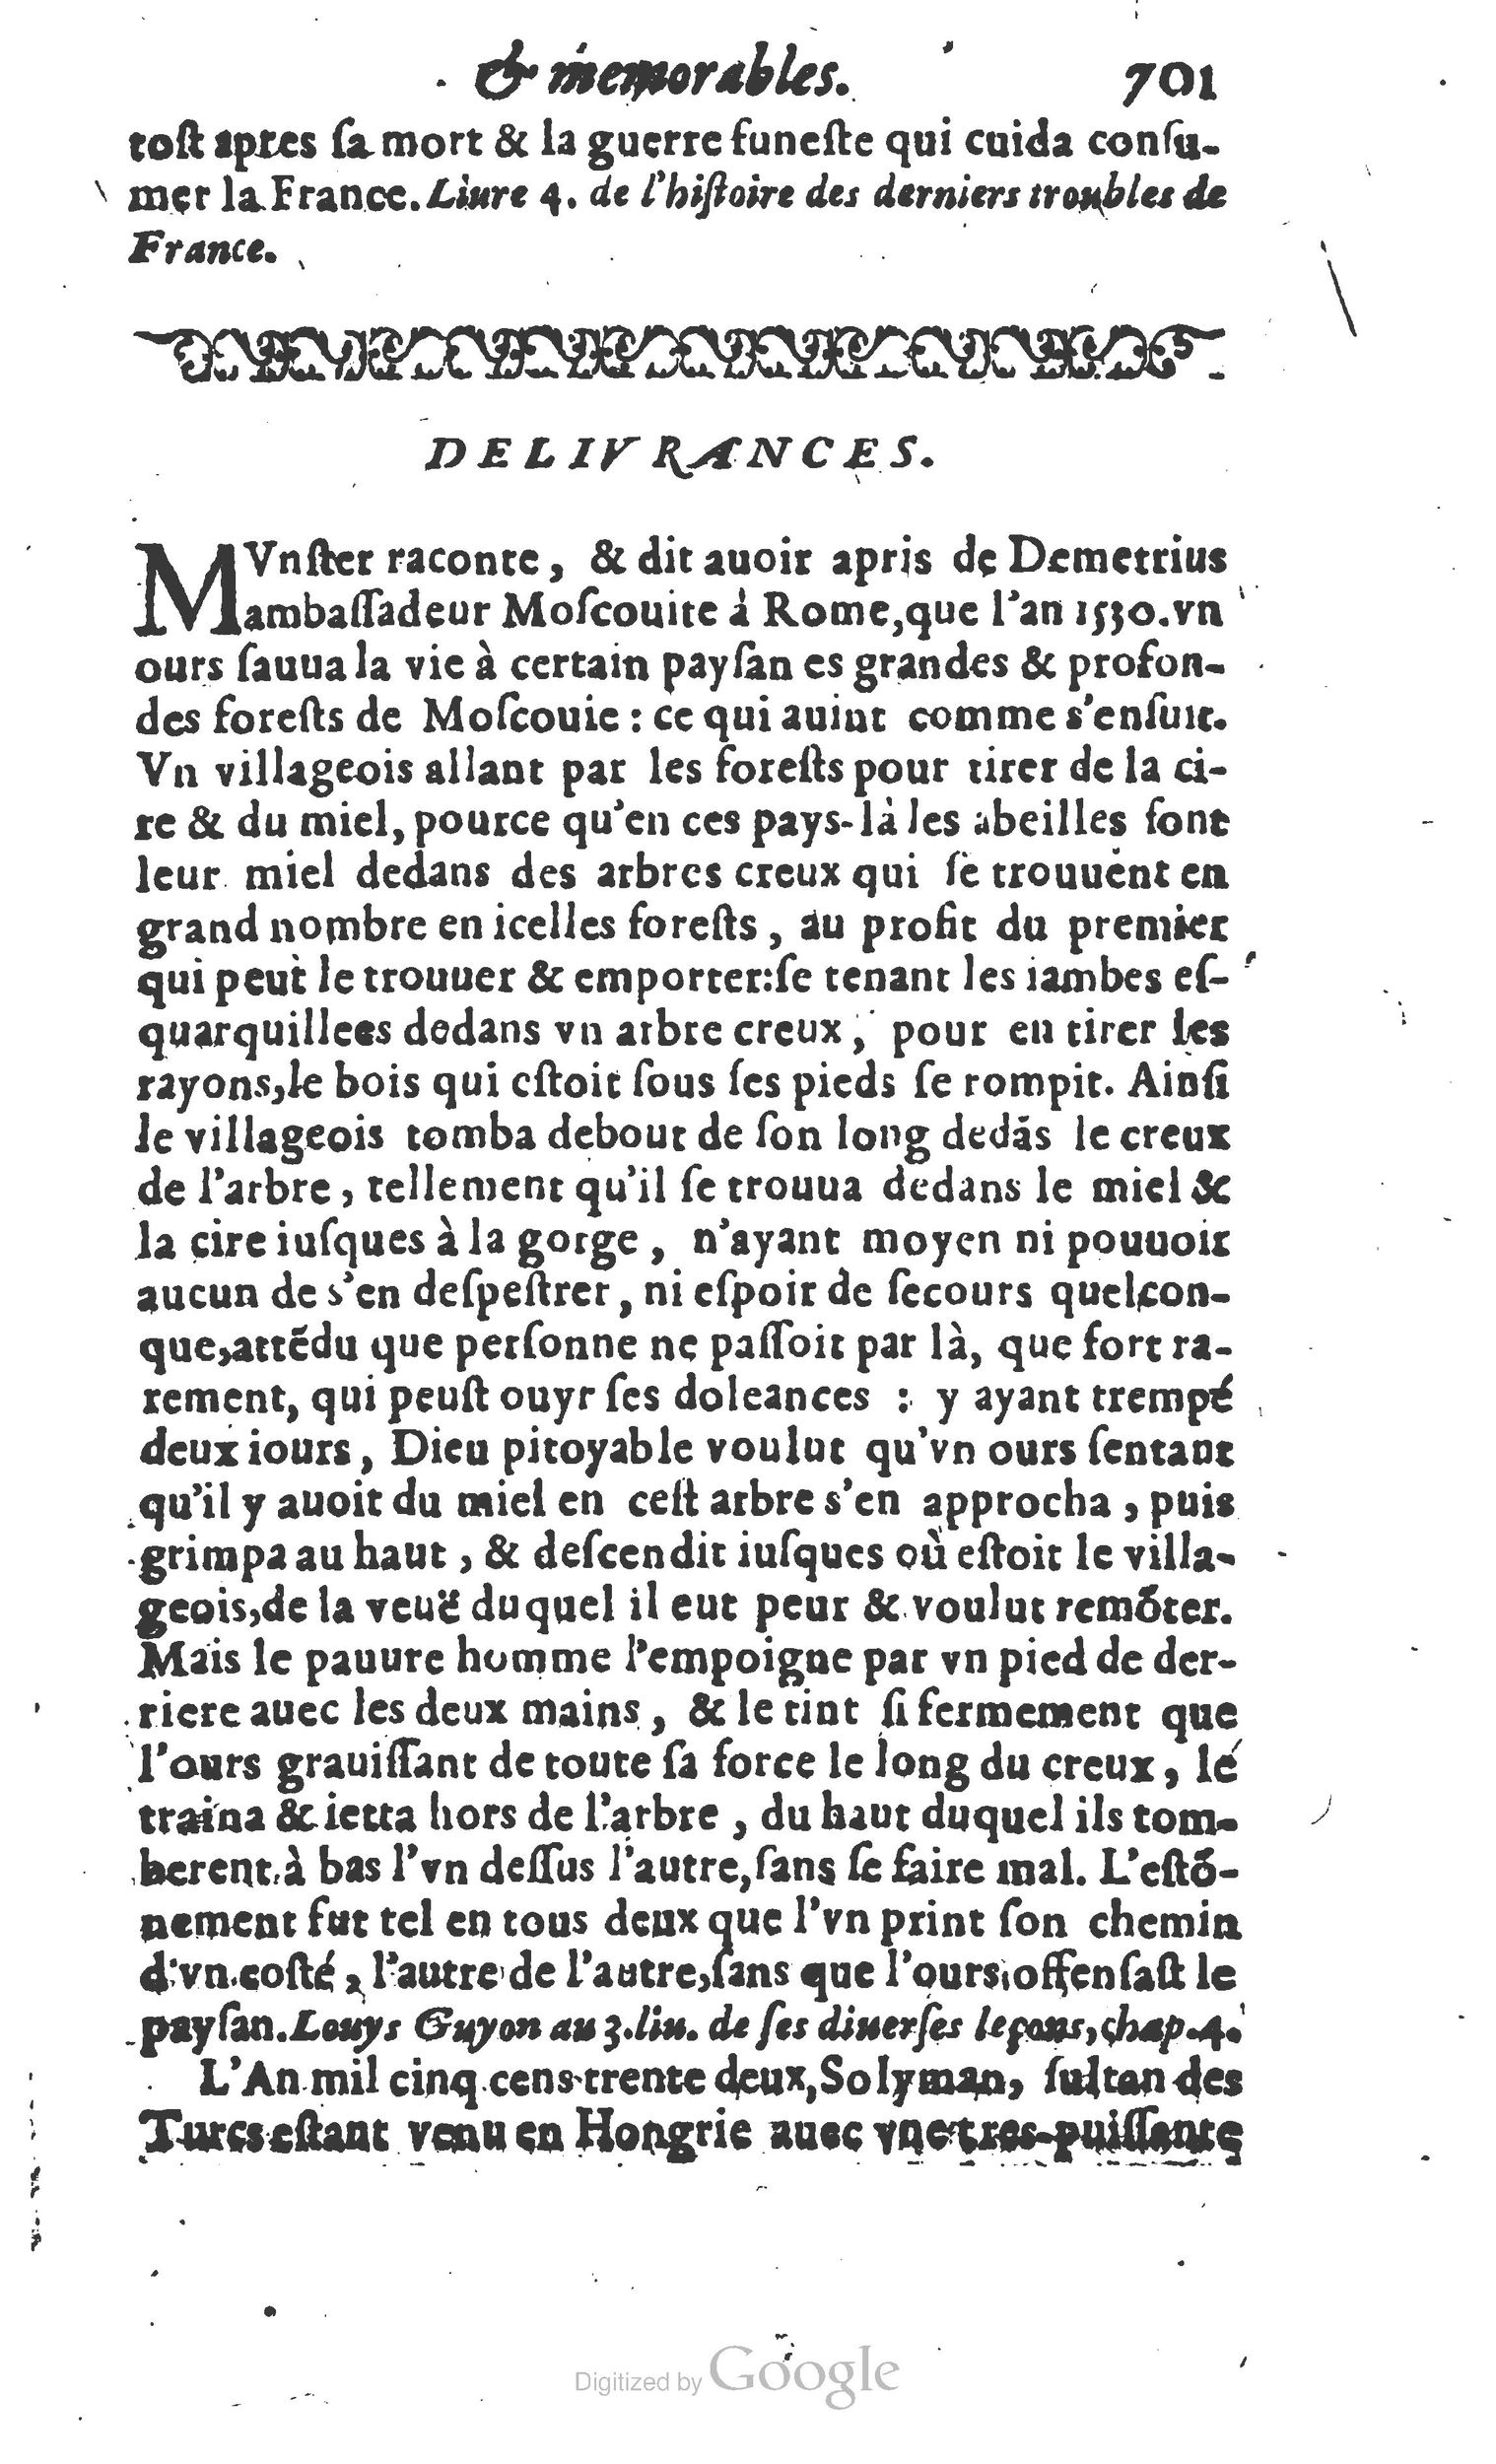 1610 Trésor d’histoires admirables et mémorables de nostre temps Marceau Princeton_Page_0722.jpg